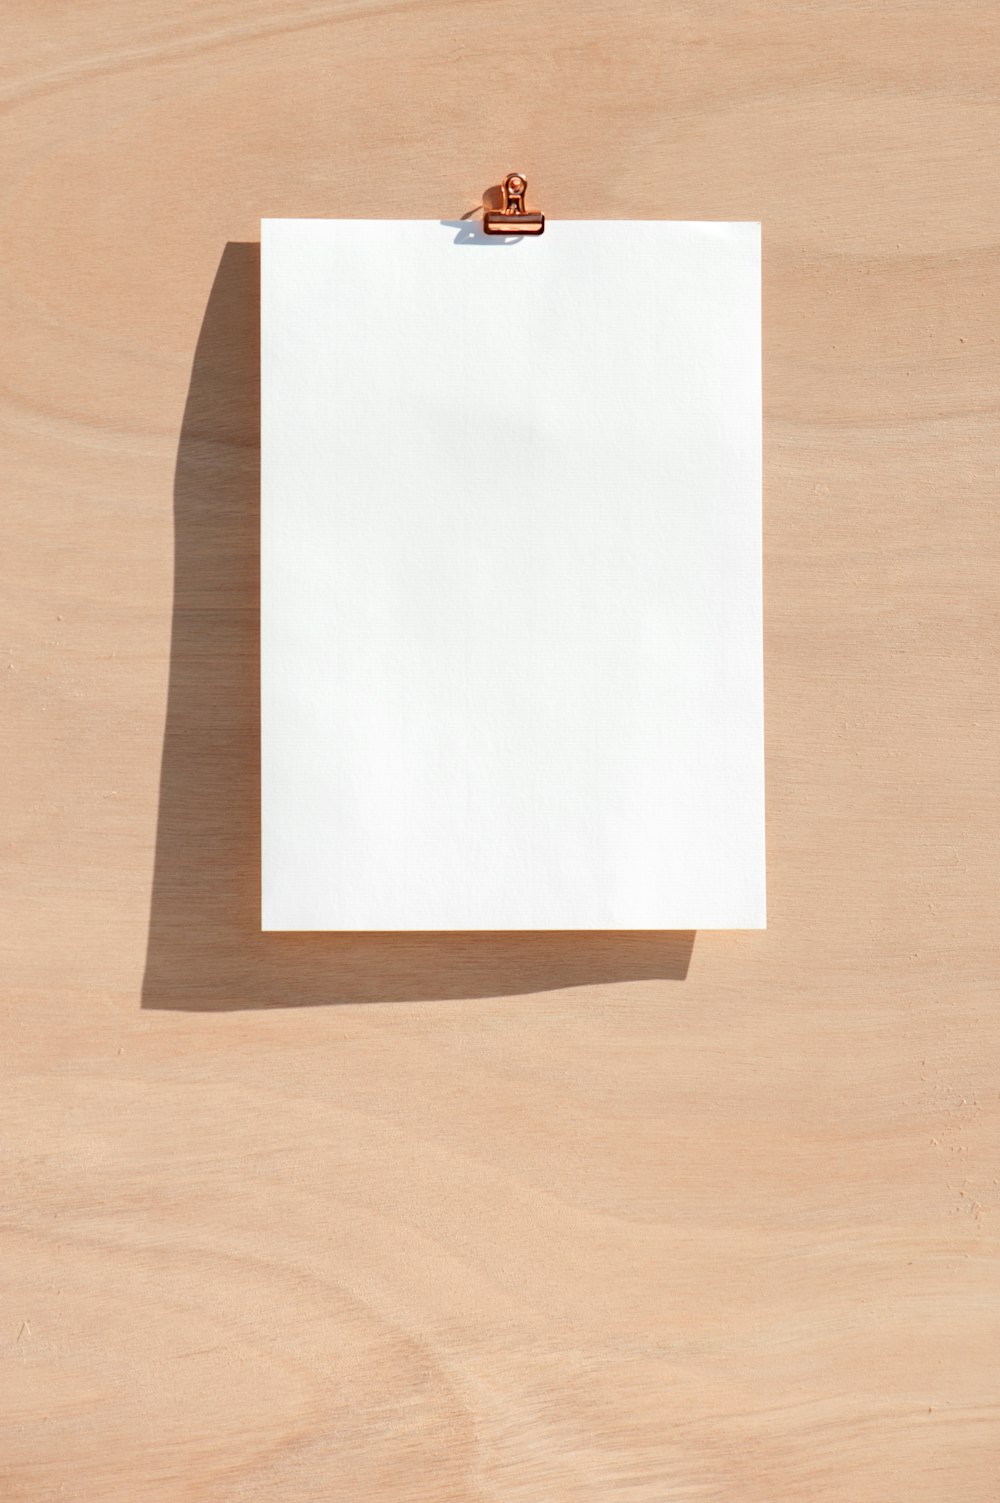 茶色の木製のテーブルに白いプリンター用紙